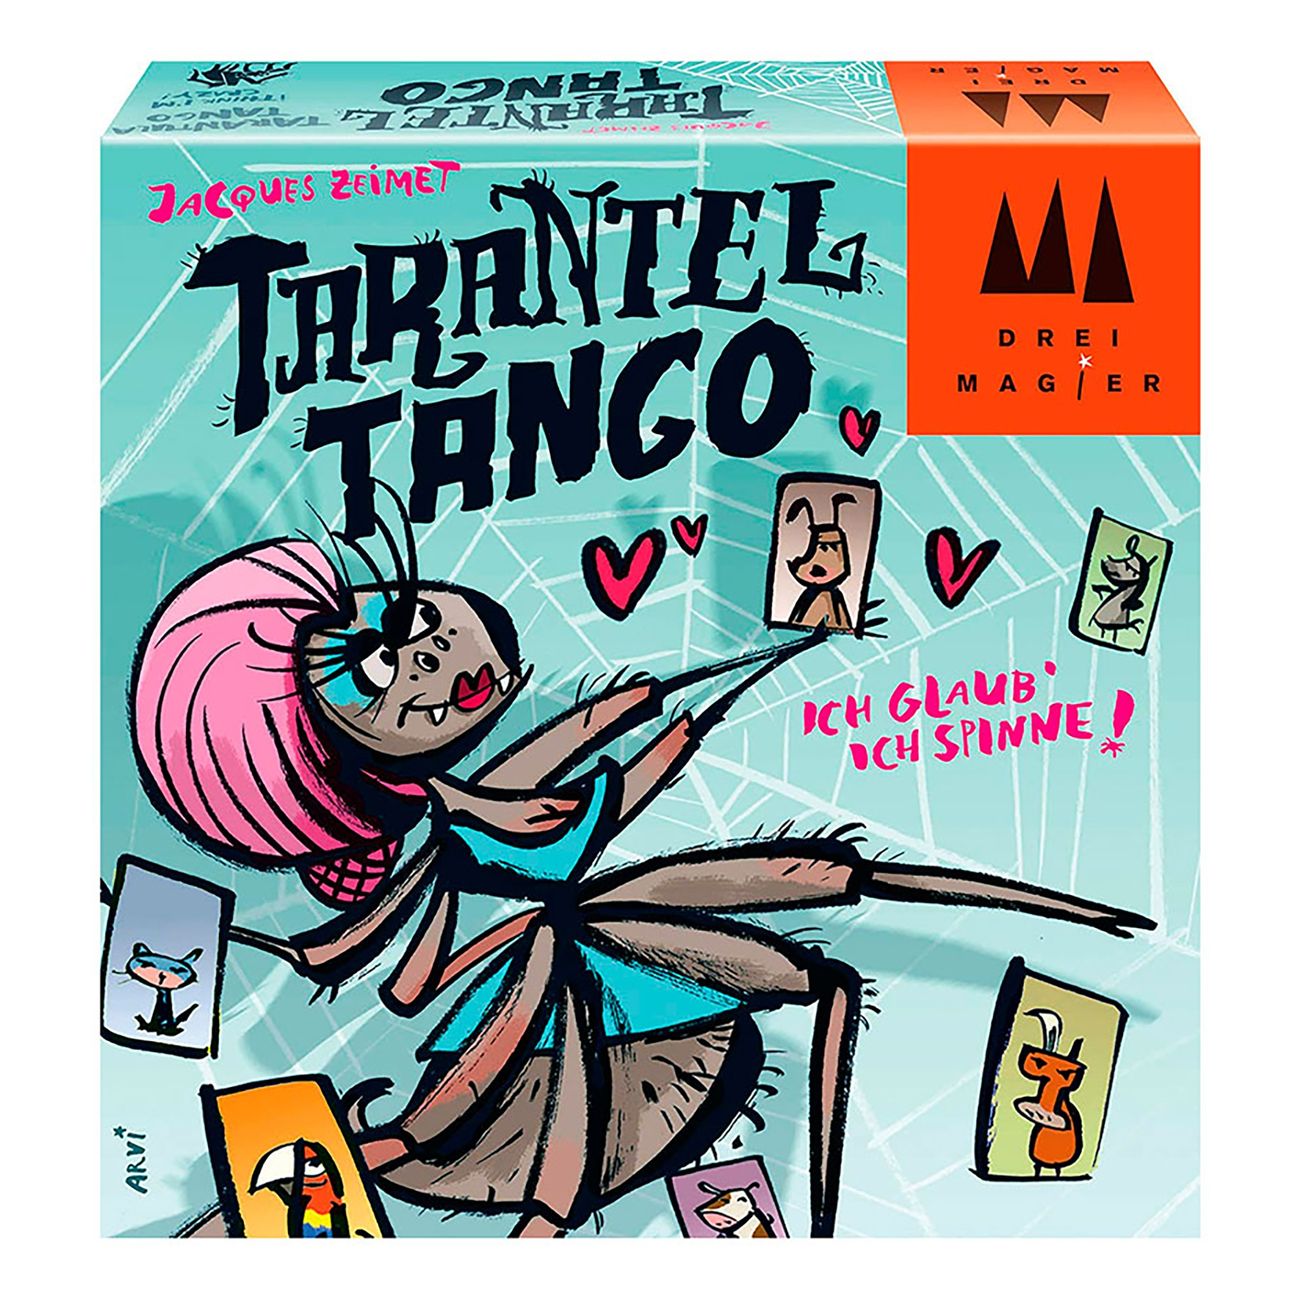 tarantel-tango-en-87989-1